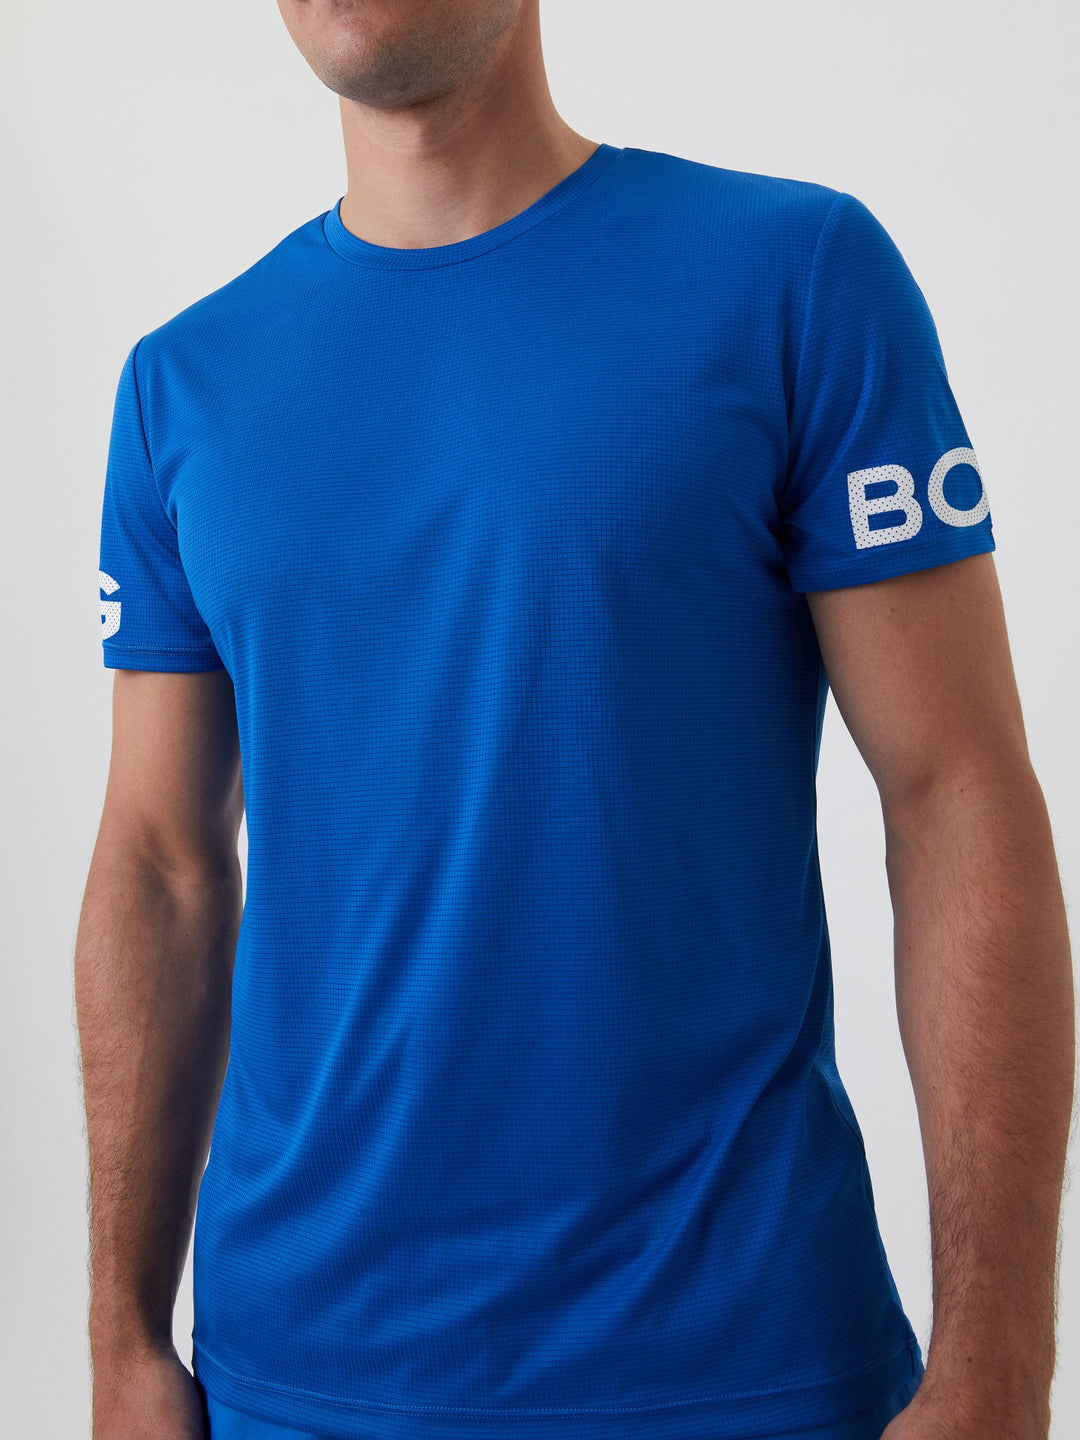 Koboltblå  Björn Borg Performance T-Shirt